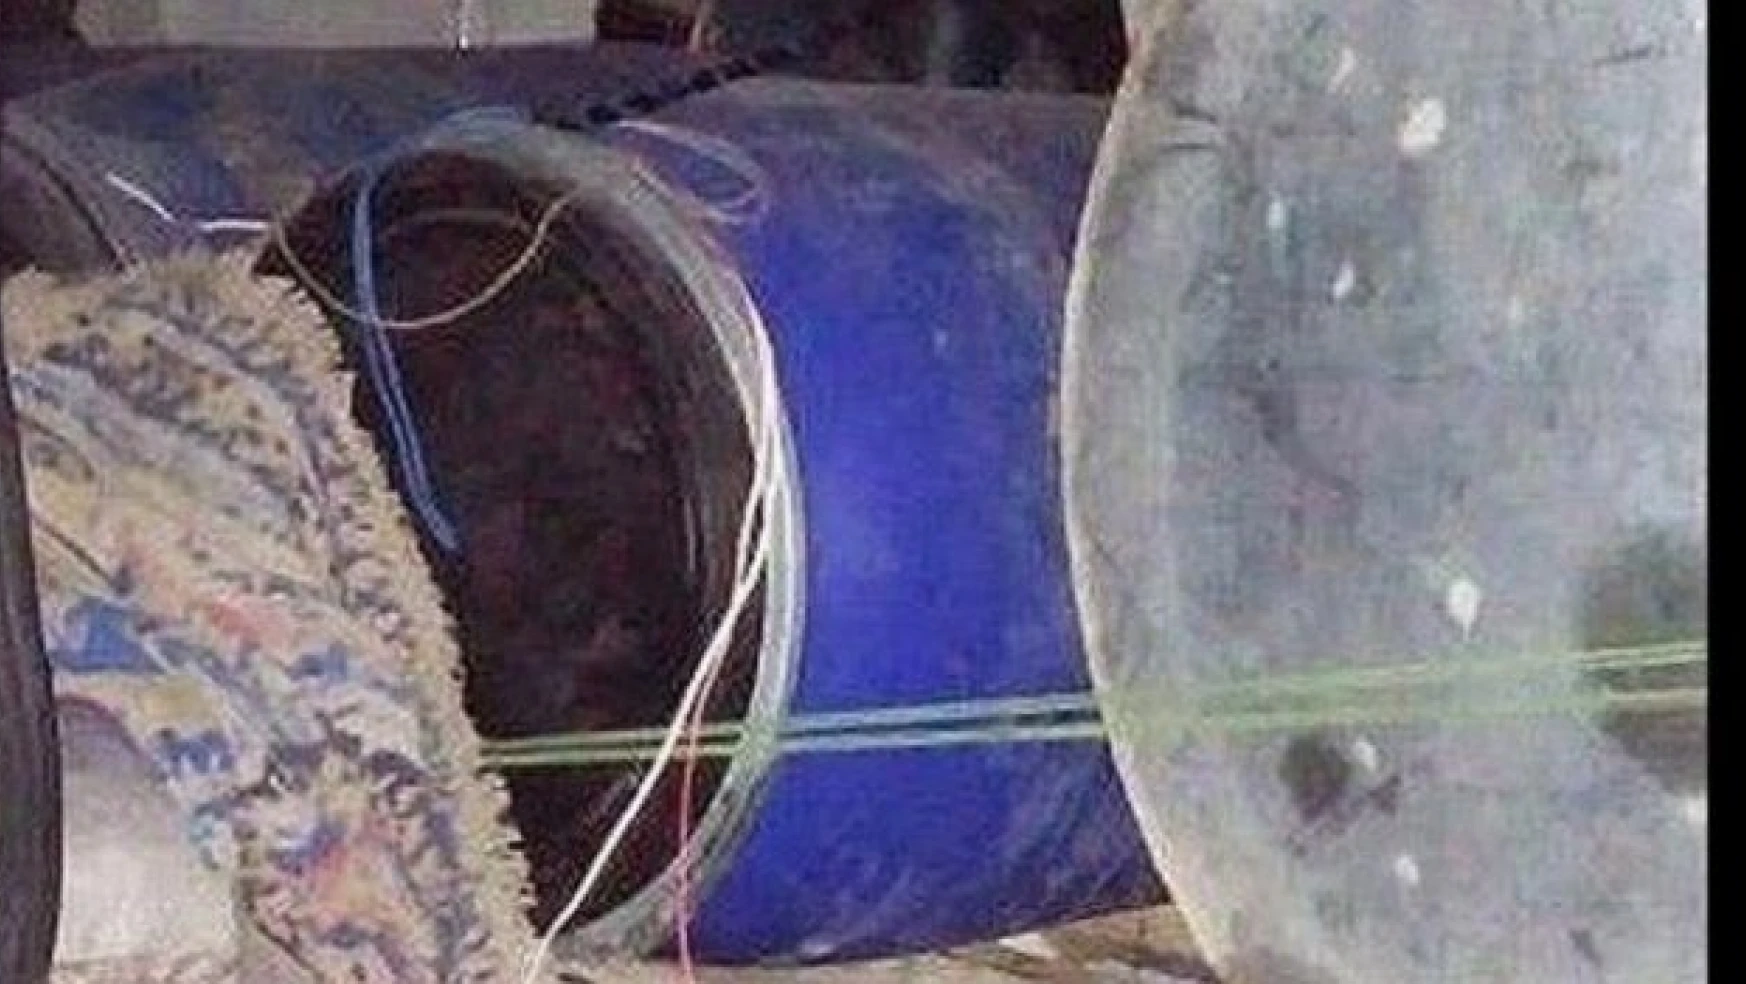 Van Erciş'te bomba yüklü kamyonet ele geçirildi